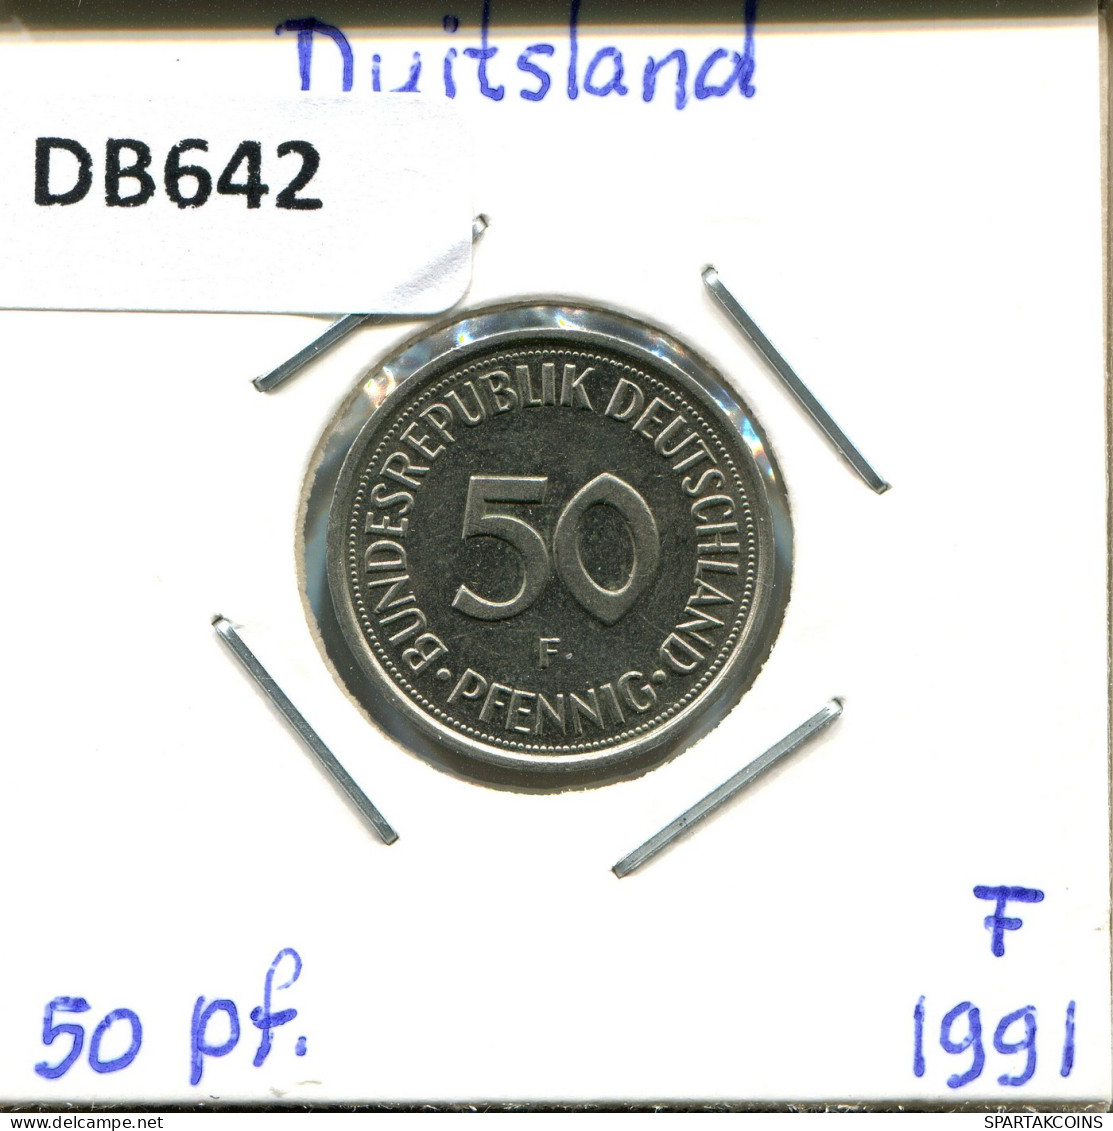 50 PFENNIG 1991 F BRD ALLEMAGNE Pièce GERMANY #DB642.F.A - 50 Pfennig